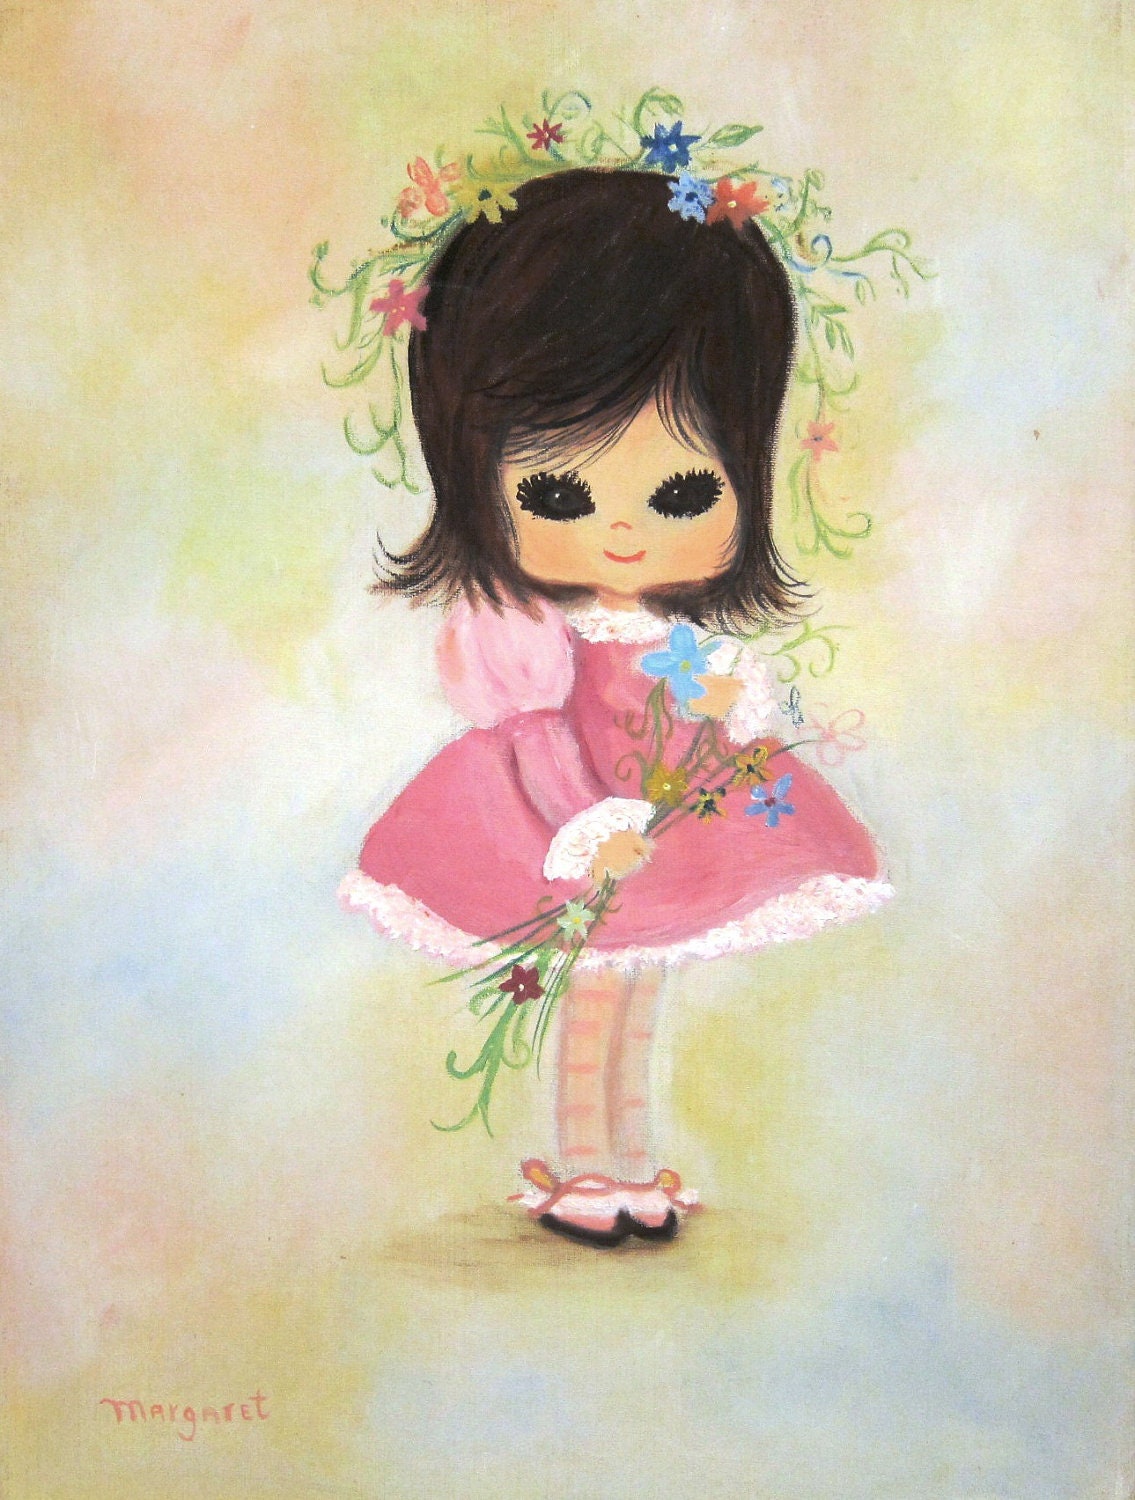 Vintage Big- Eyed Little Girl Painting- Pink Dress, Flowers, Brown Eyes, Eyelashes, Garland in Hair - coreymoortgat